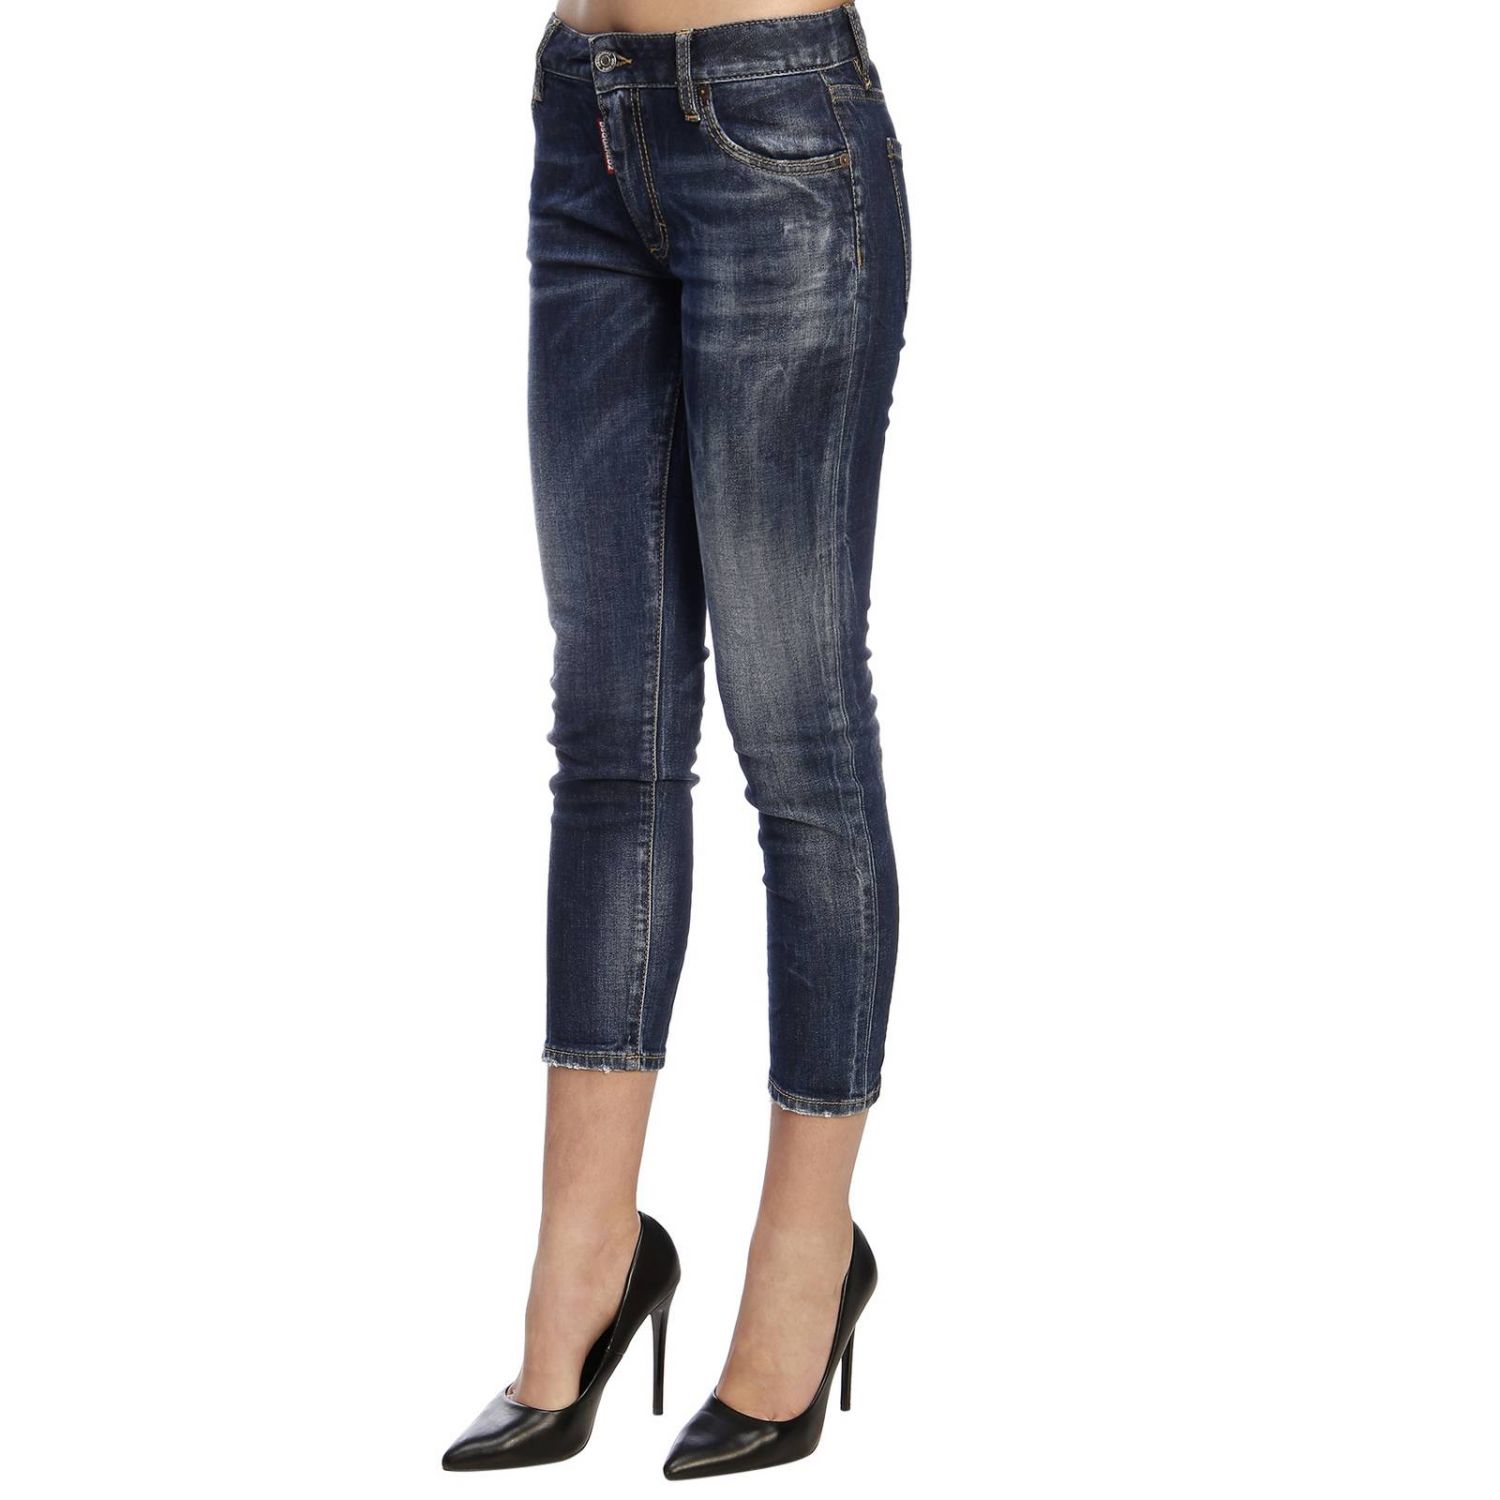 Dsquared2 Outlet: Jeans women - Denim | Jeans Dsquared2 S75LB0146S30595 ...